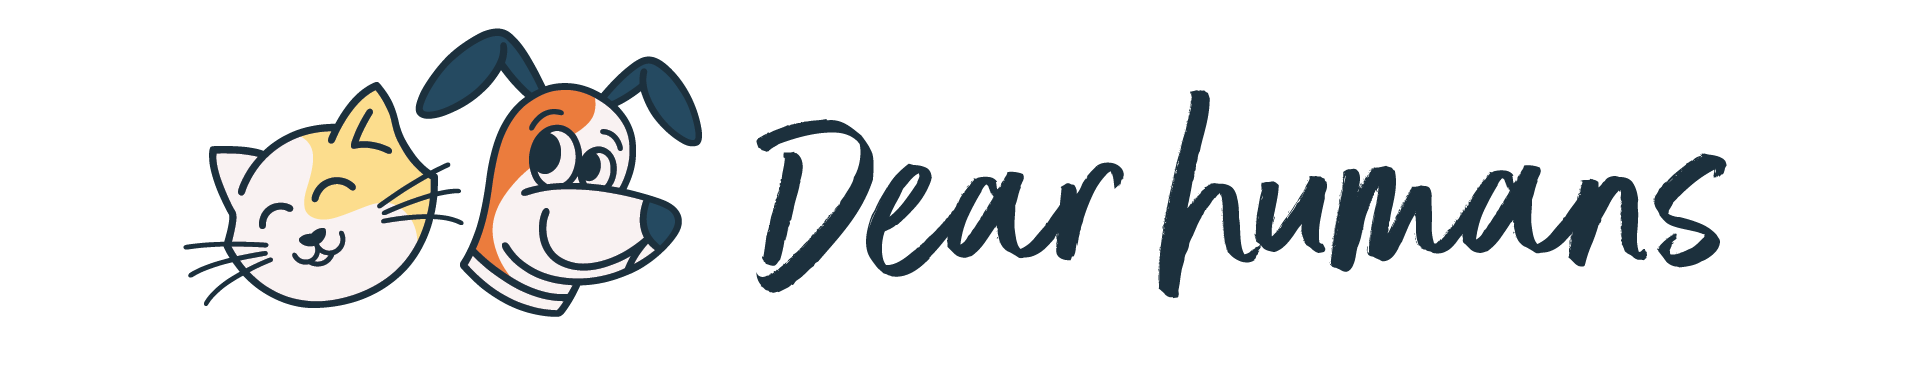 http://dearhumans.co.nz/wp-content/uploads/2020/06/cropped-dear-humans-horizontal-logo.png